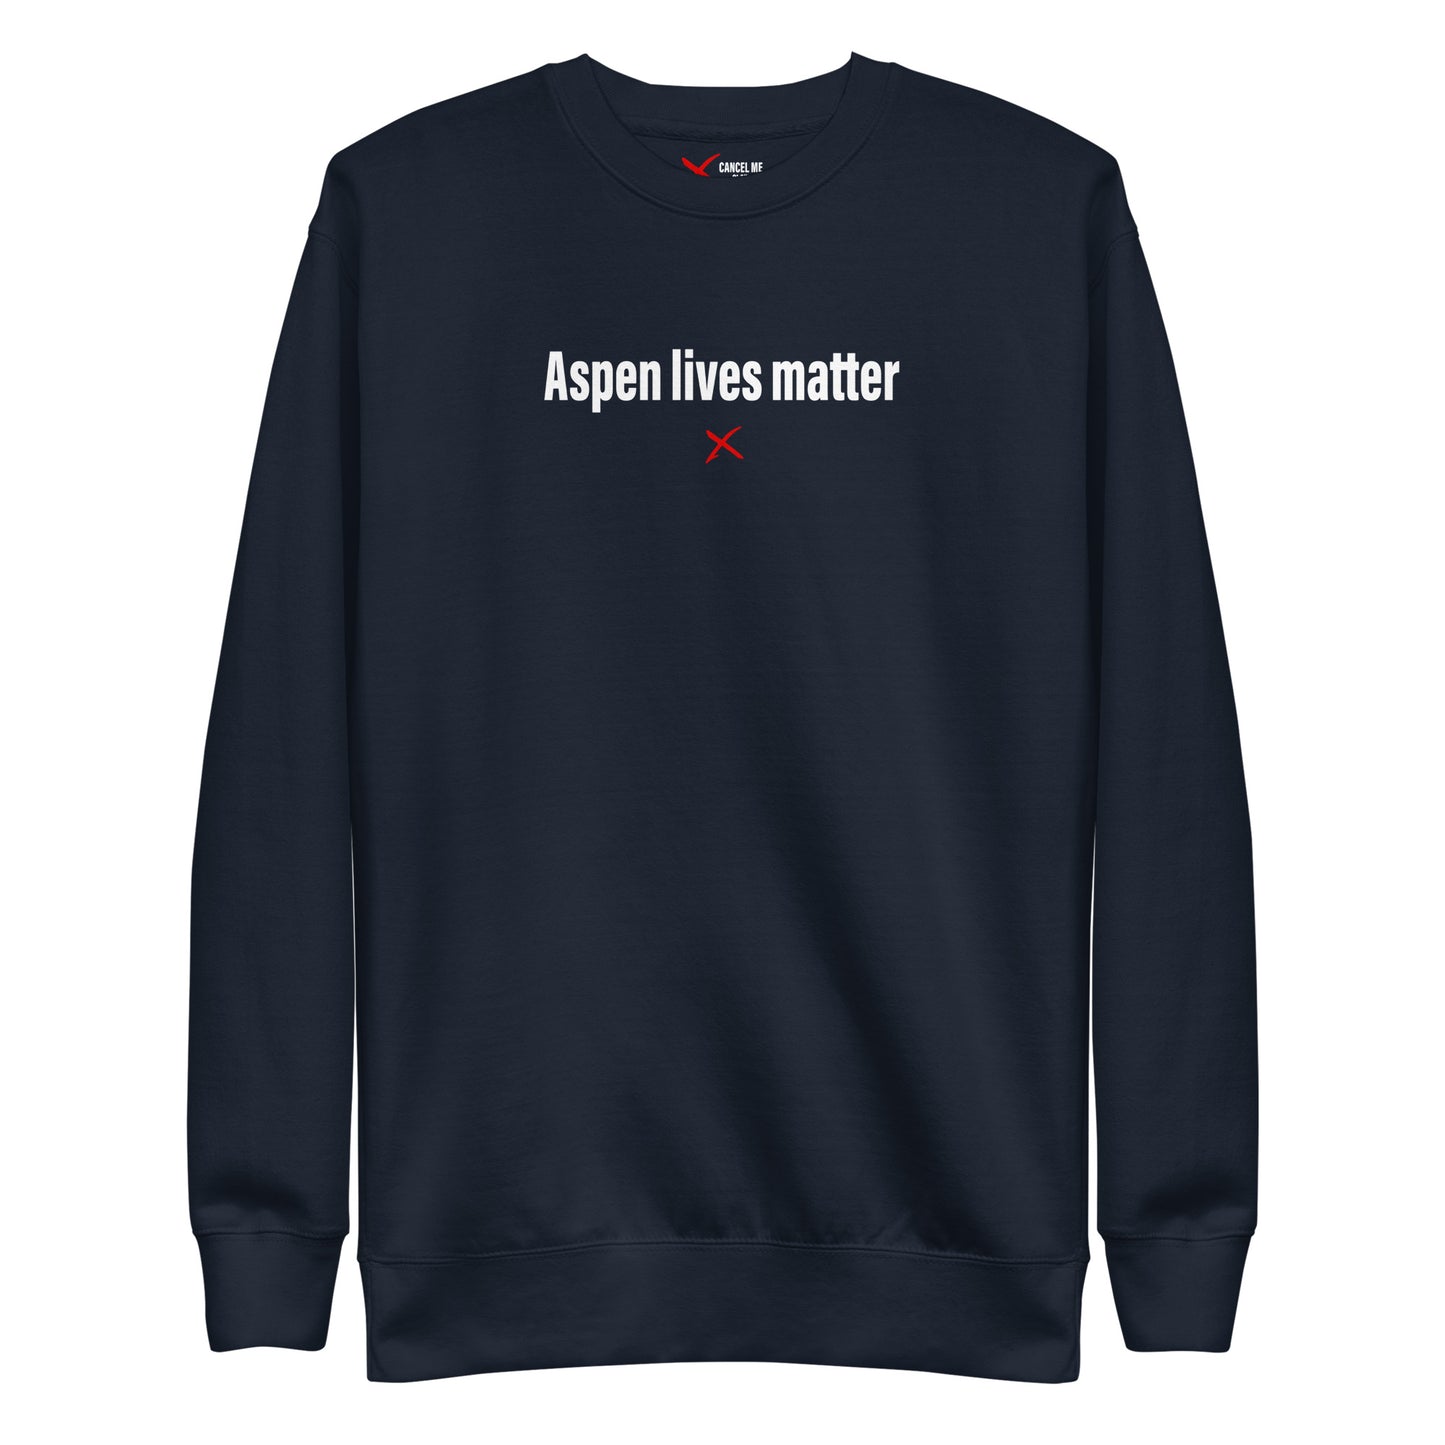 Aspen lives matter - Sweatshirt